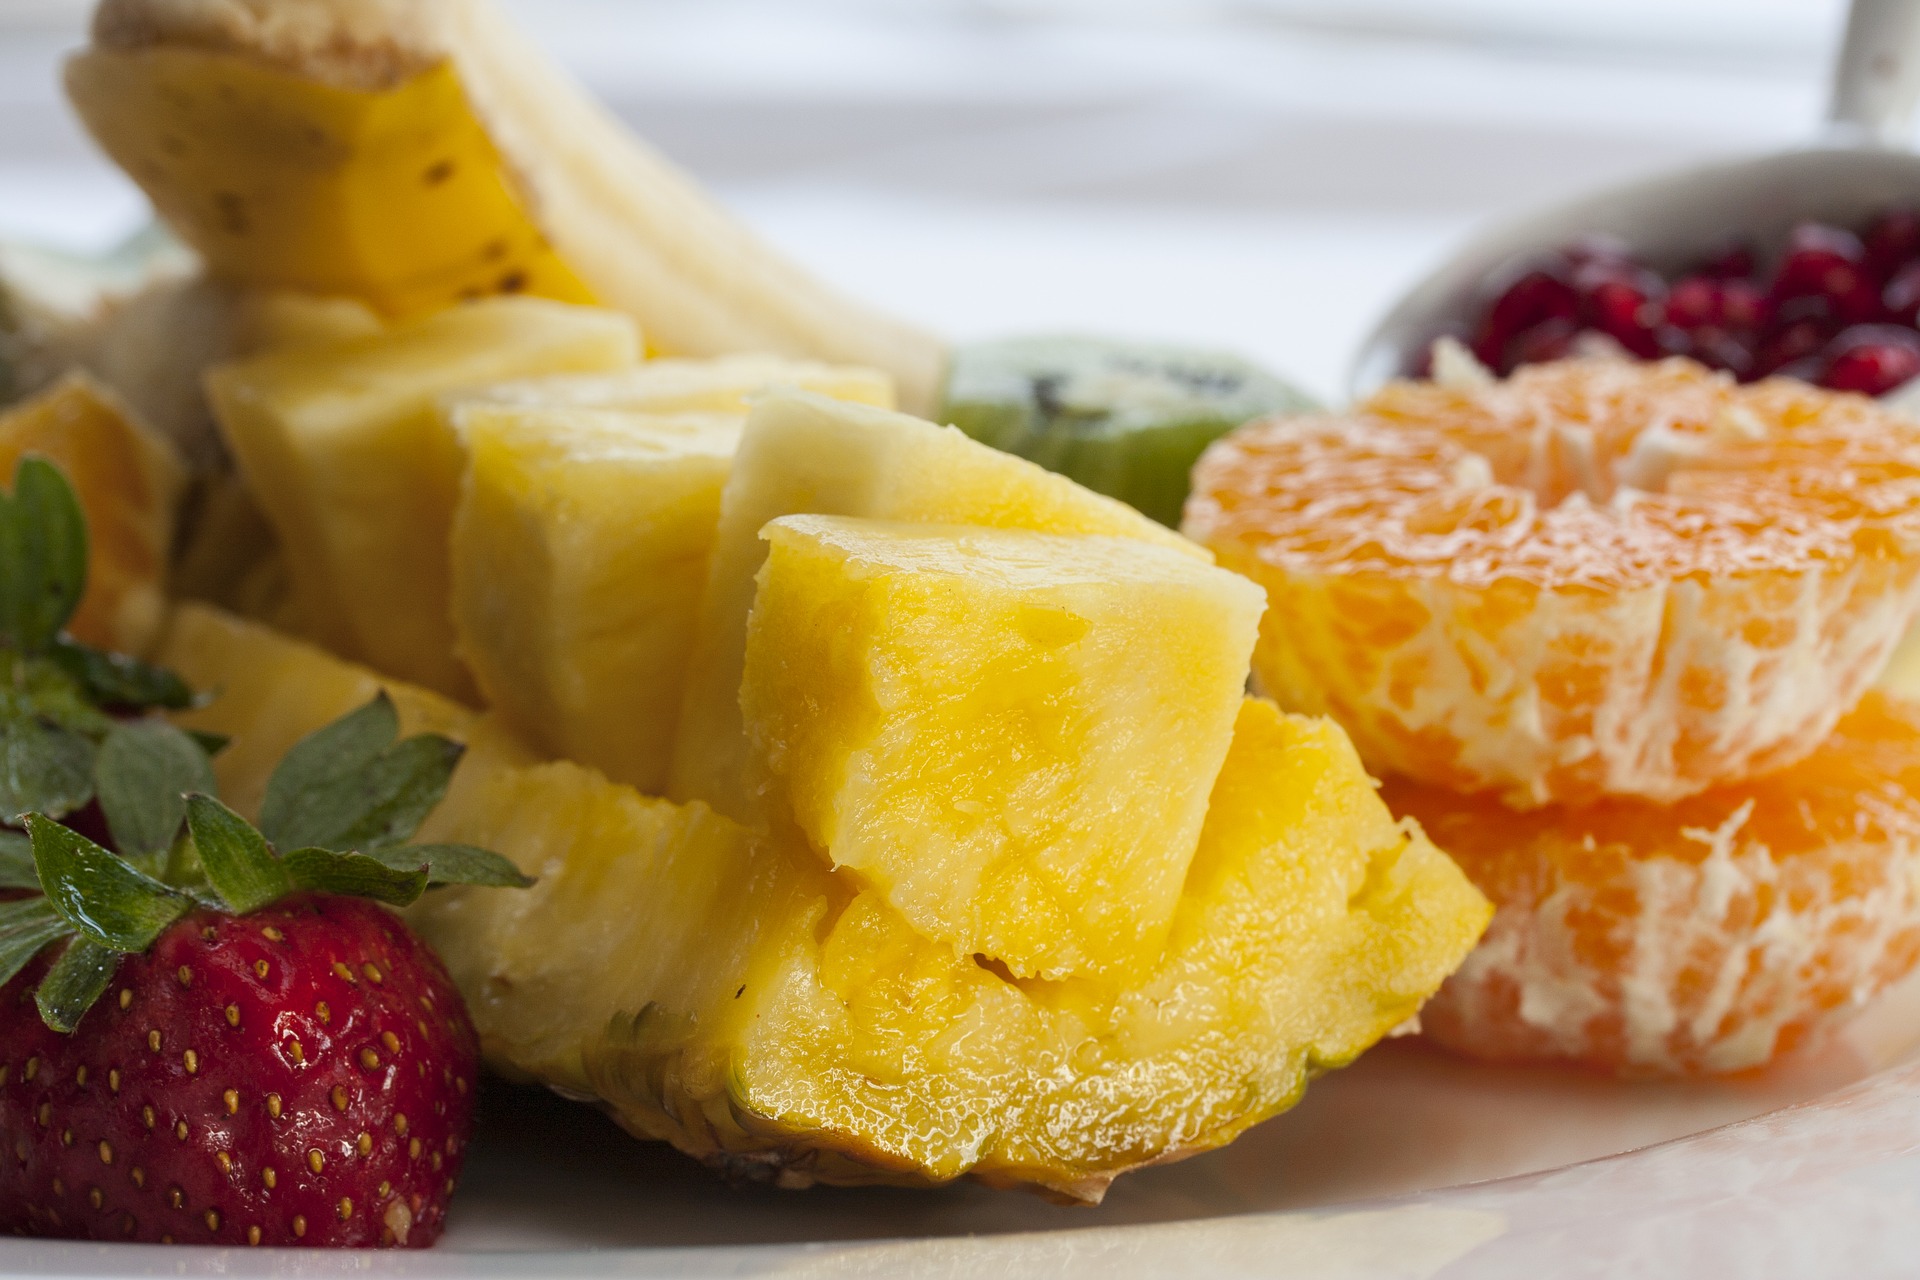 Dieta cu ananas te ajută să topeşti de grame pe zi. Iată cum!